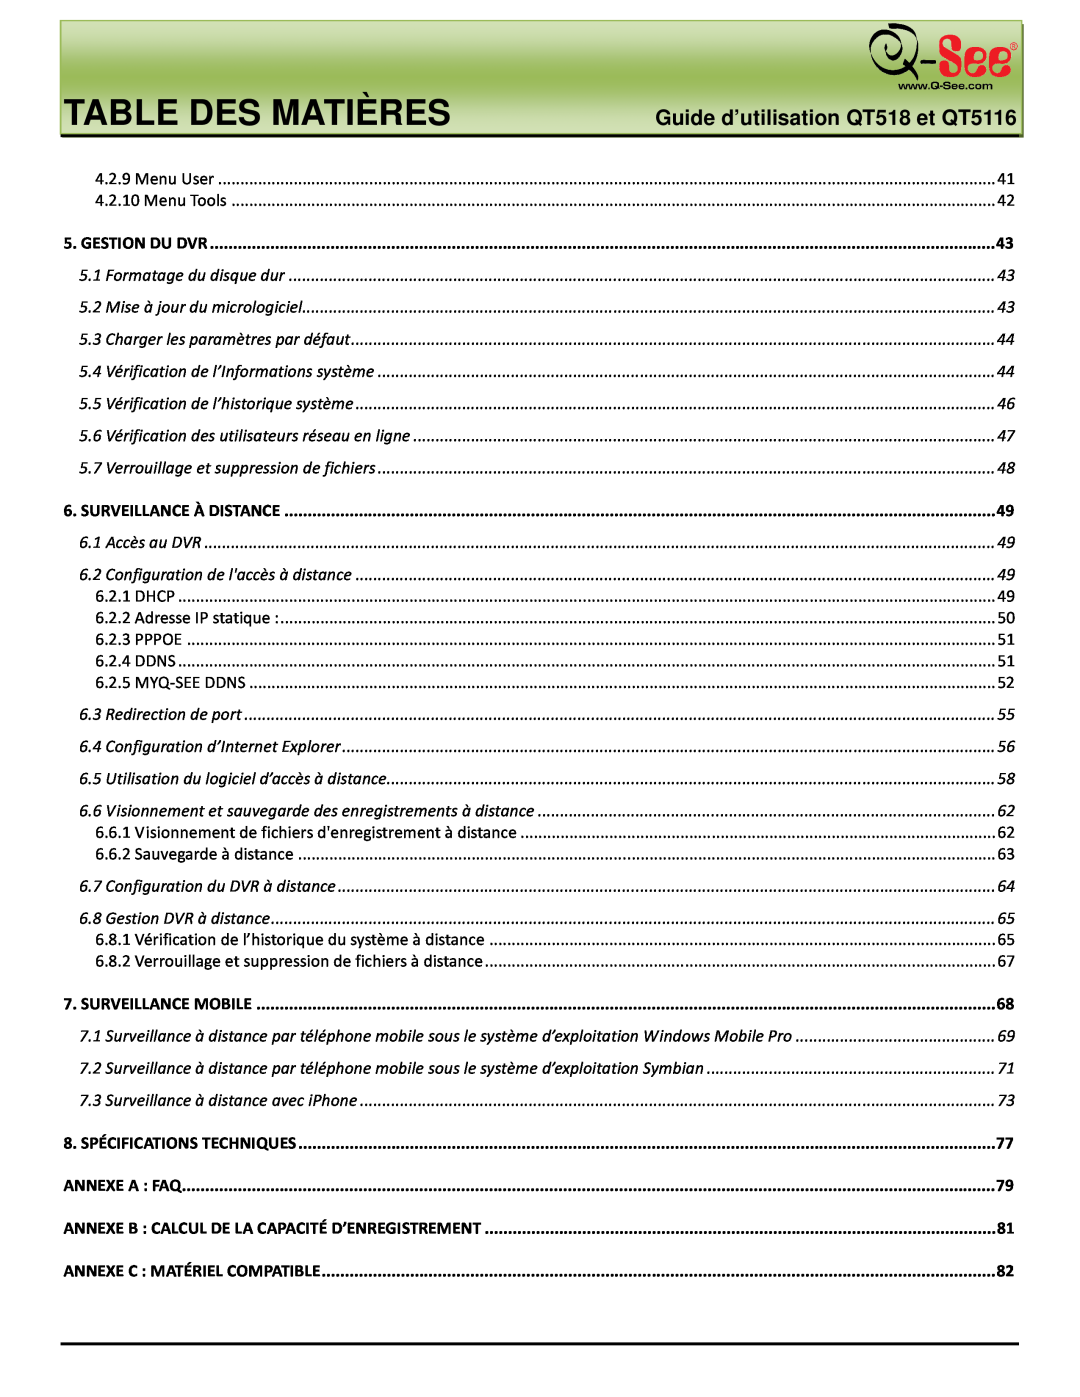 Q-See manual Table Des Matières, Guide d’utilisation QT518 et QT5116, Menu User 